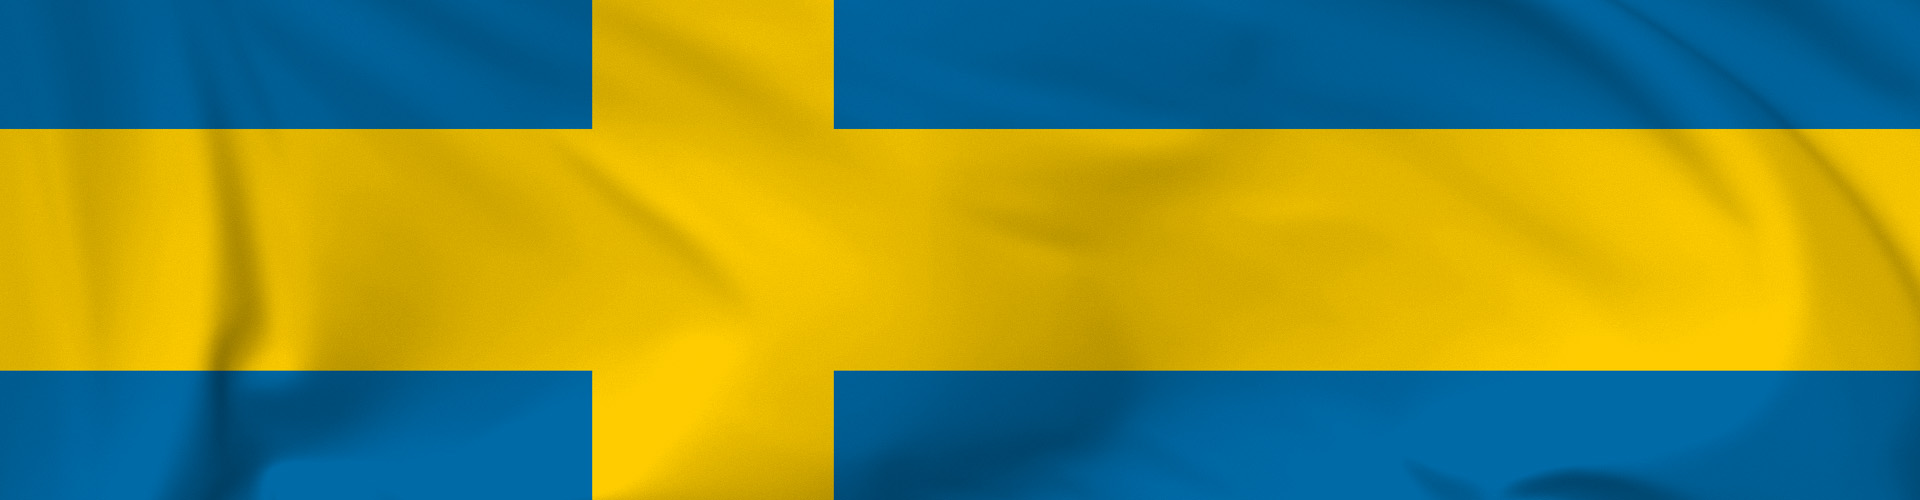 Sweden Banner